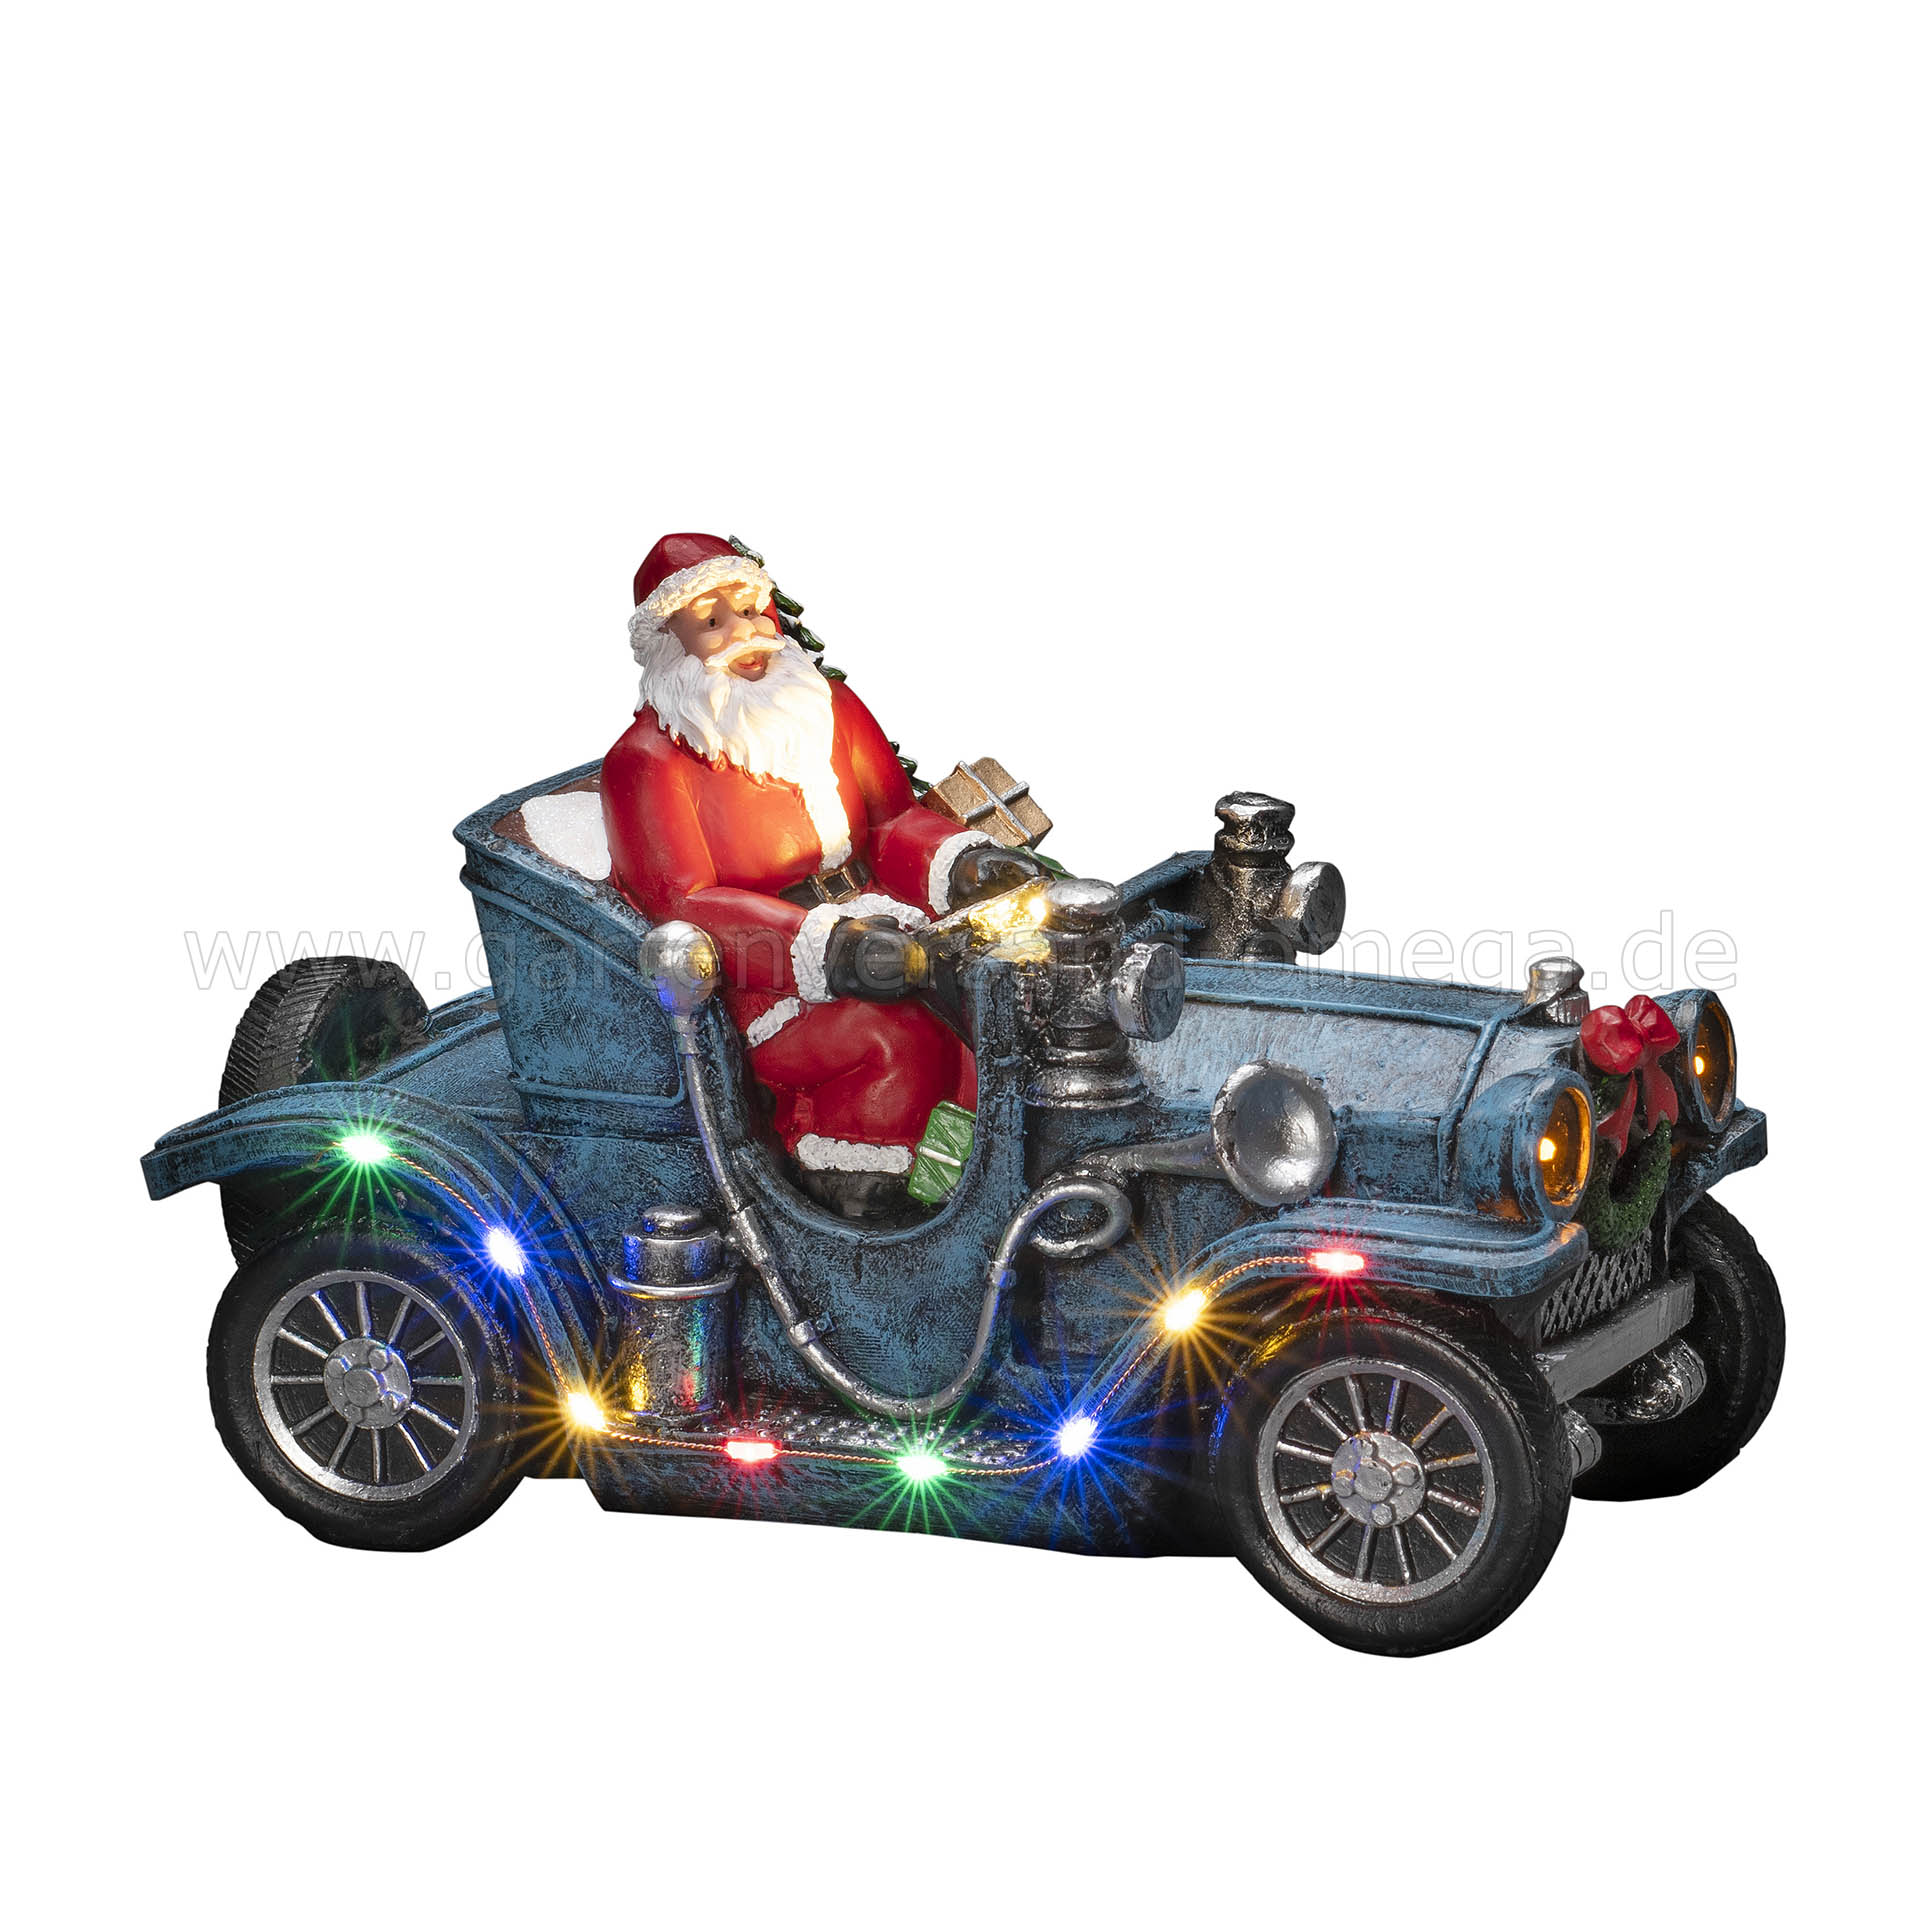 LED-Szenerie Weihnachtsmann im Auto Weihnachtsdeko Weihnachtsmann, Auto LED-Beleuchtung Weihnachtsmann, Schreibtischdekoration mit Oldtimer Weihnachtsmann, LED-Figur Weihnachten, - Deko-Auto Auto mit LED Auto